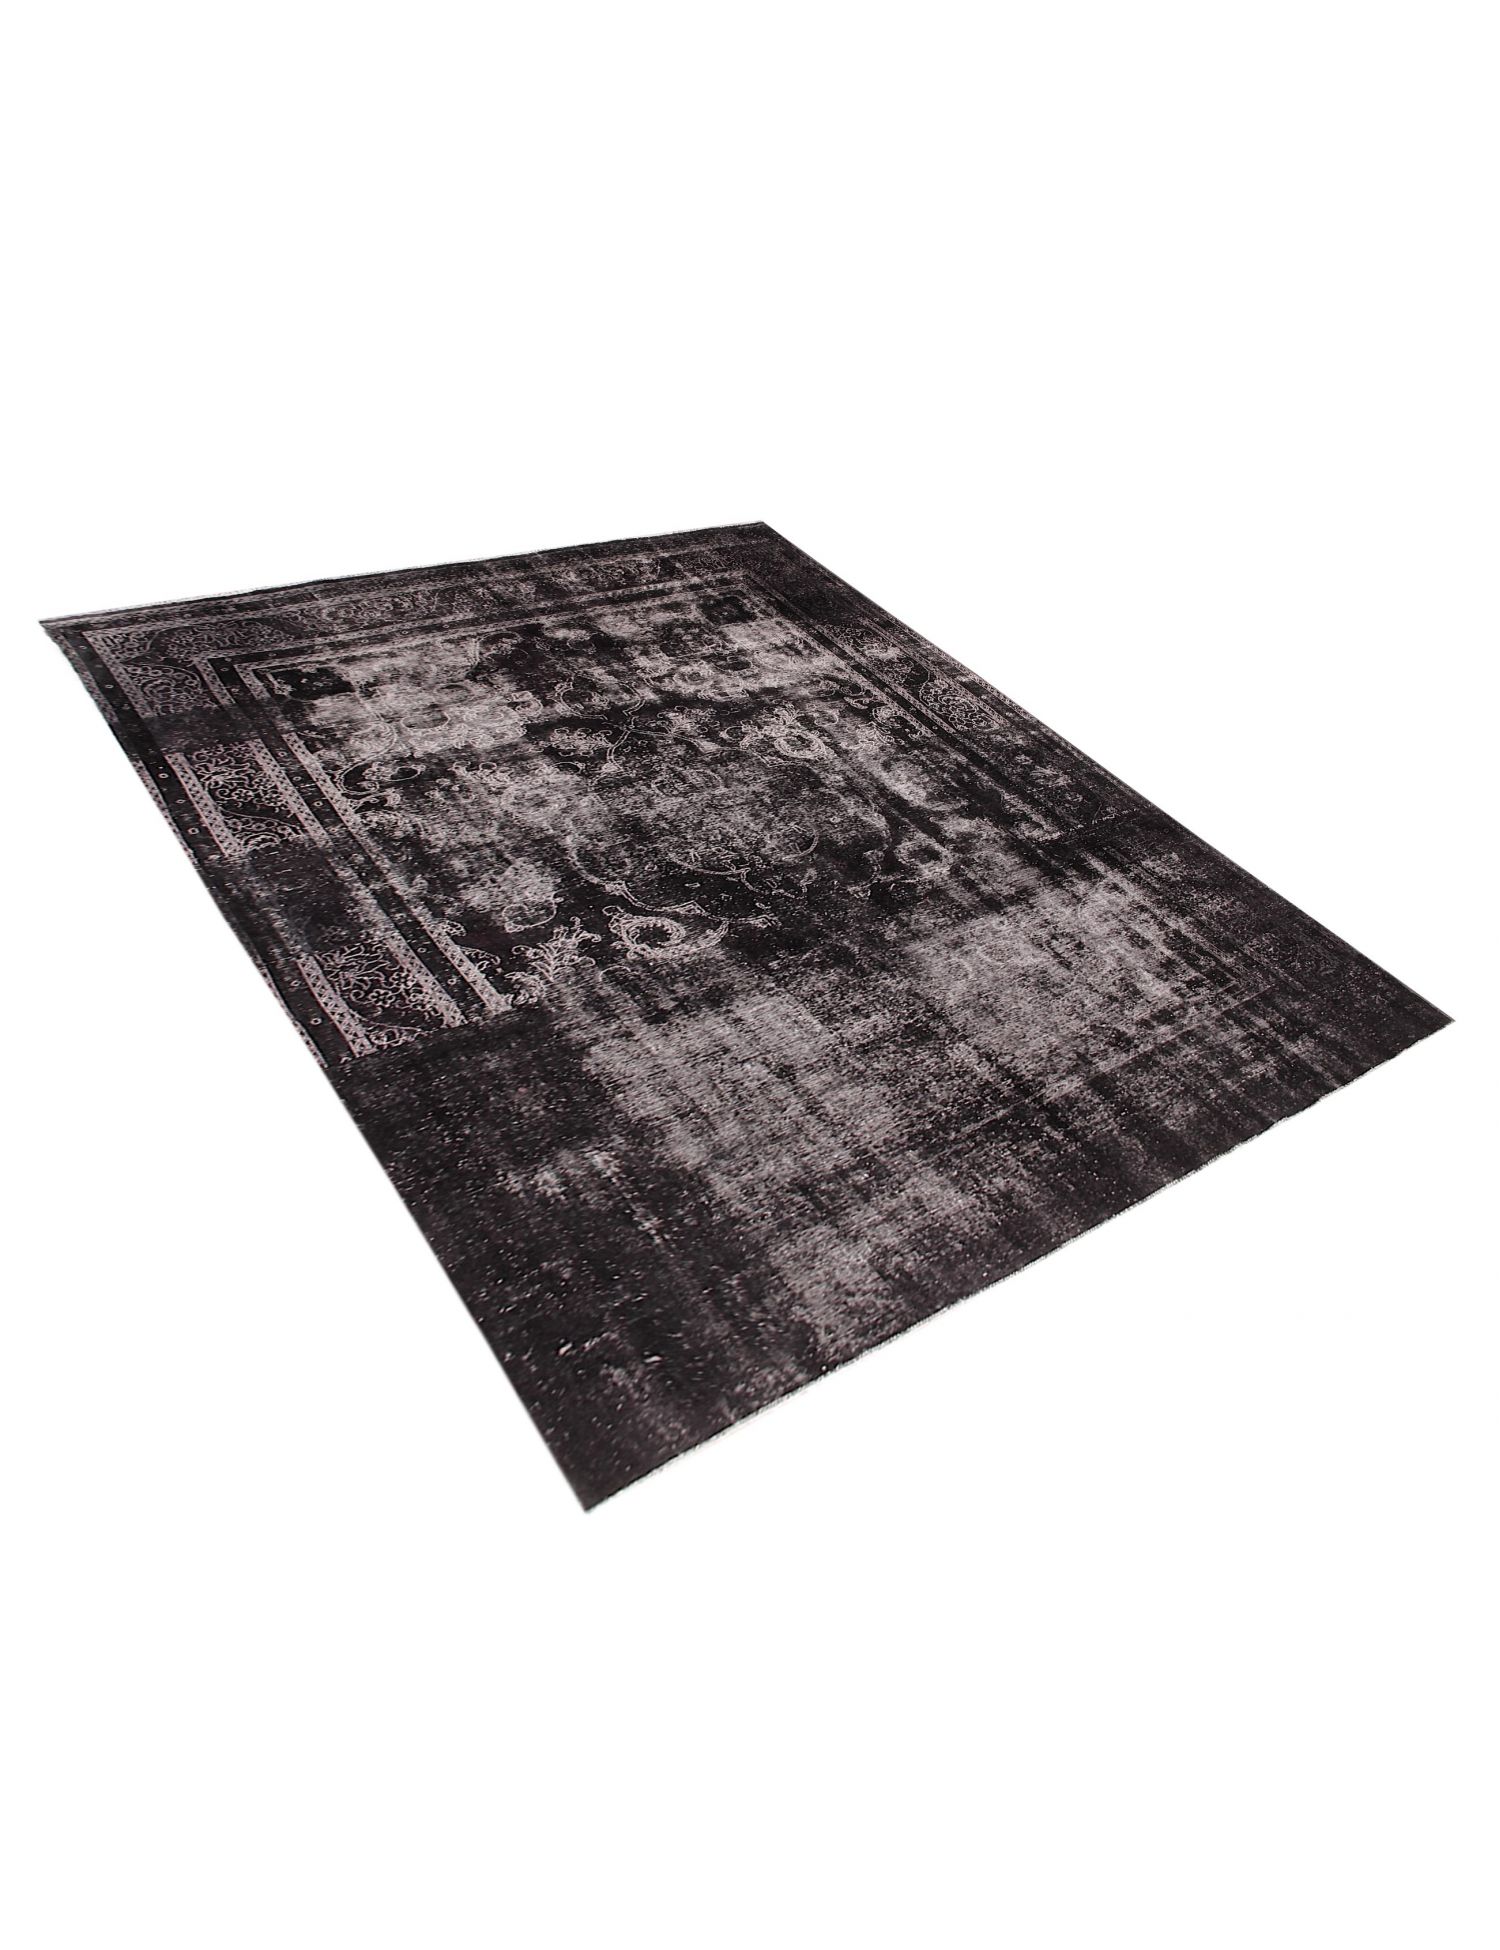 Persian Vintage Carpet  black <br/>383 x 285 cm